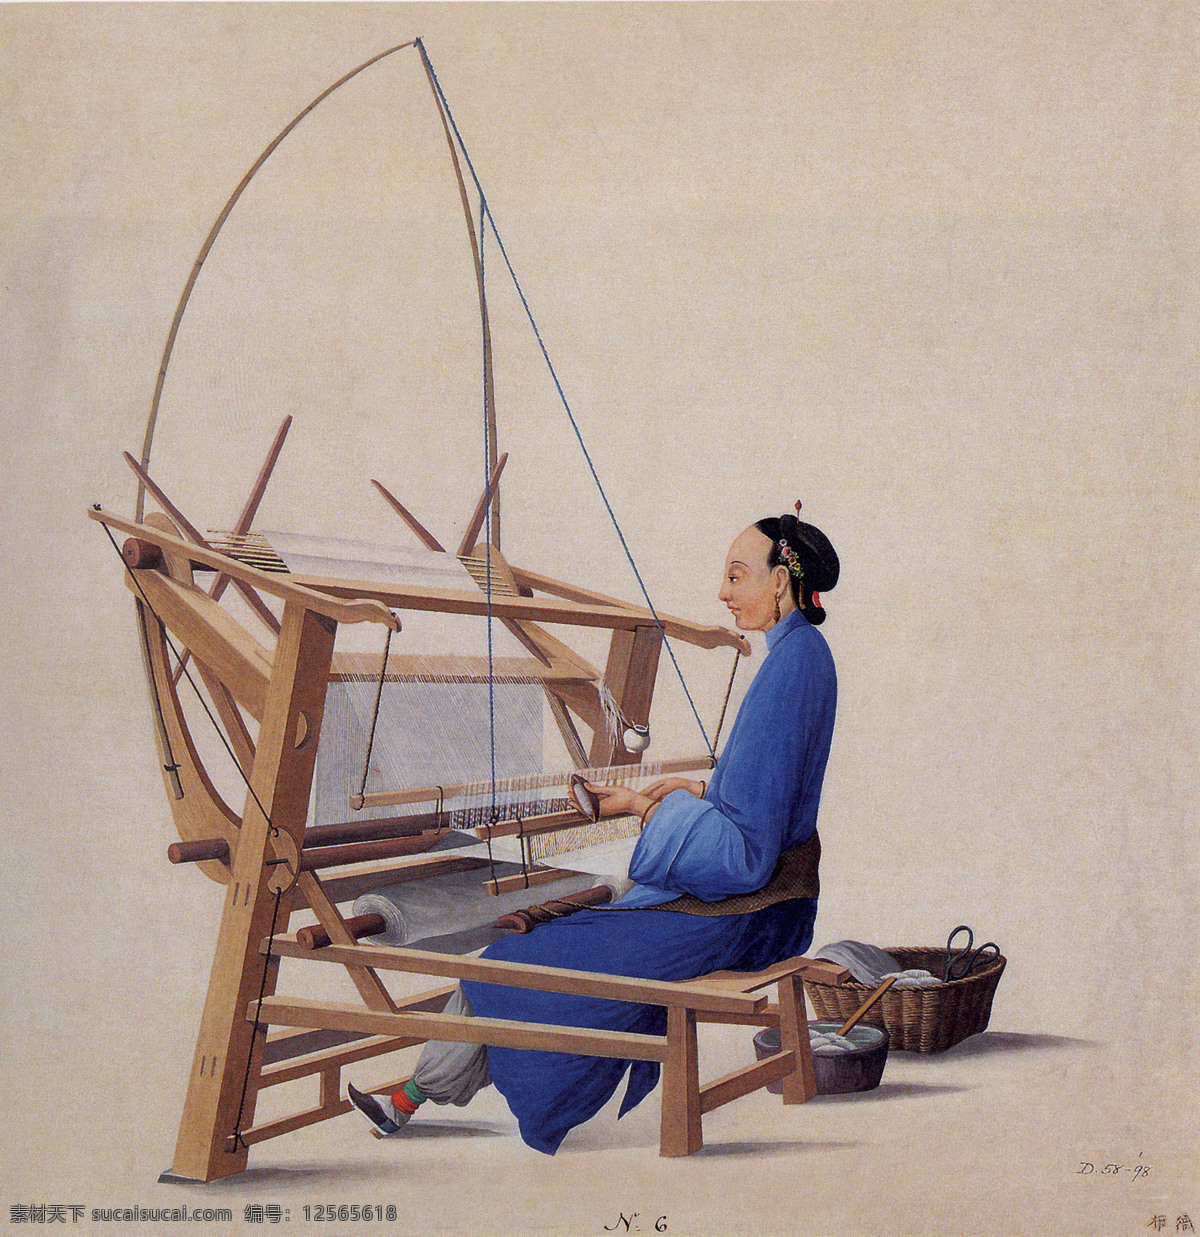 织布 织布机 妇女 箩筐 剪刀 织布的线 灰色底纹 劳动 中国 传统 行业 传统文化 文化艺术